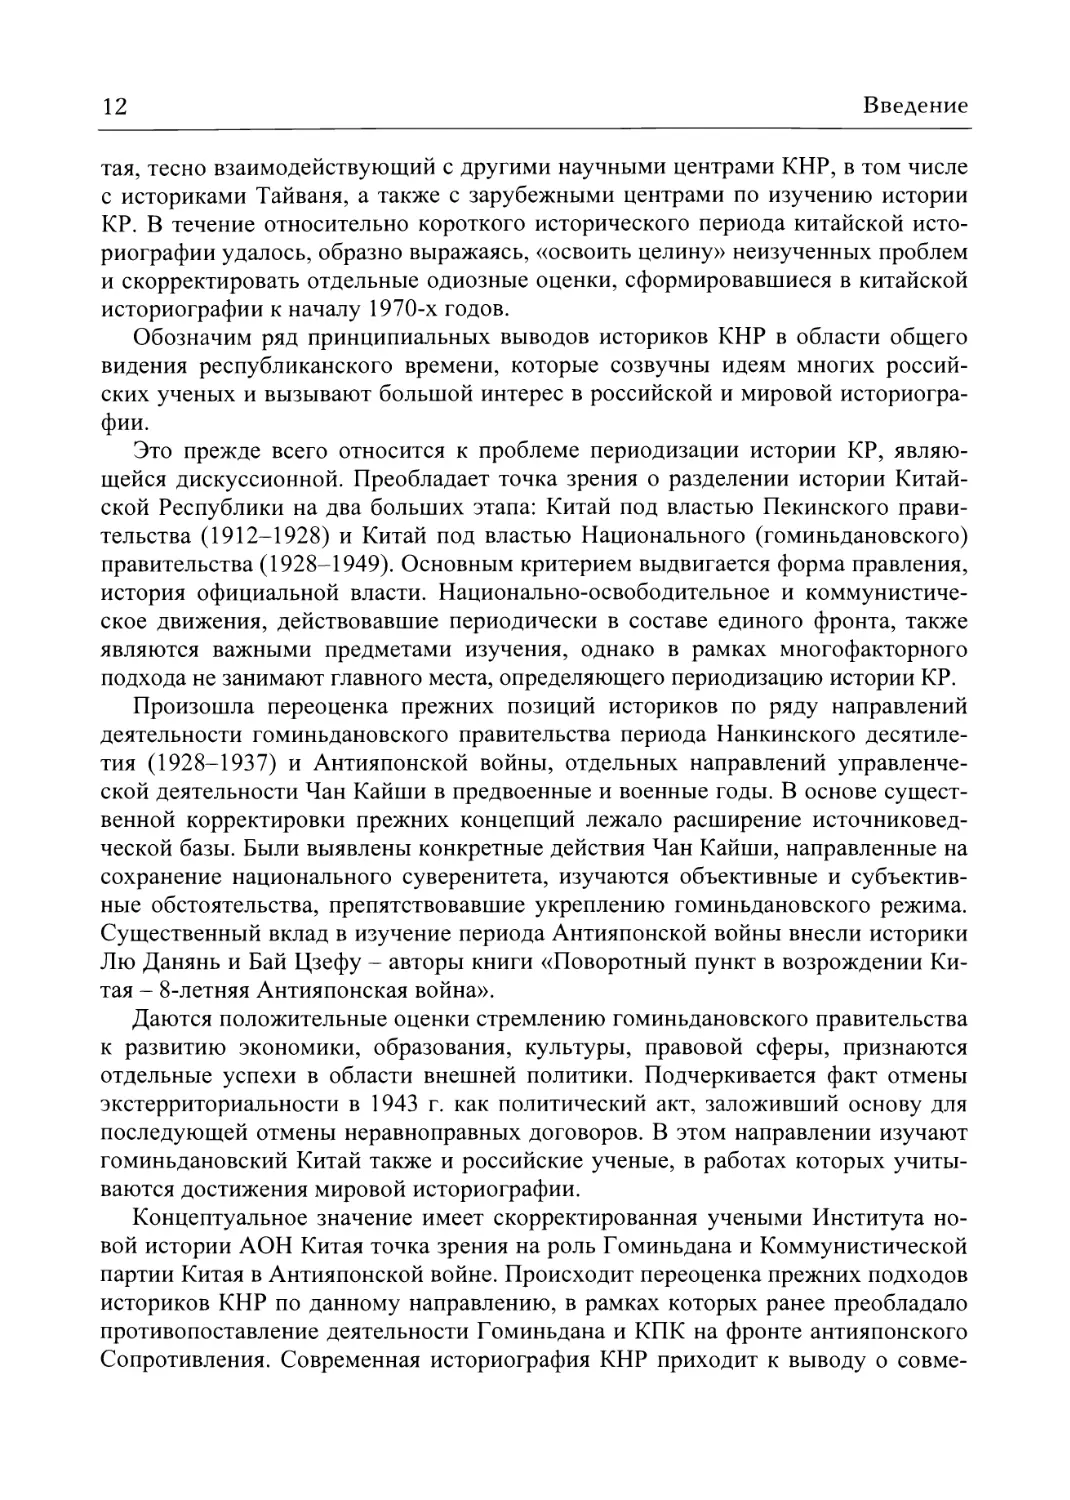 Реферат: Новодемократический конституционализм в Украине: проблемы становления и развития